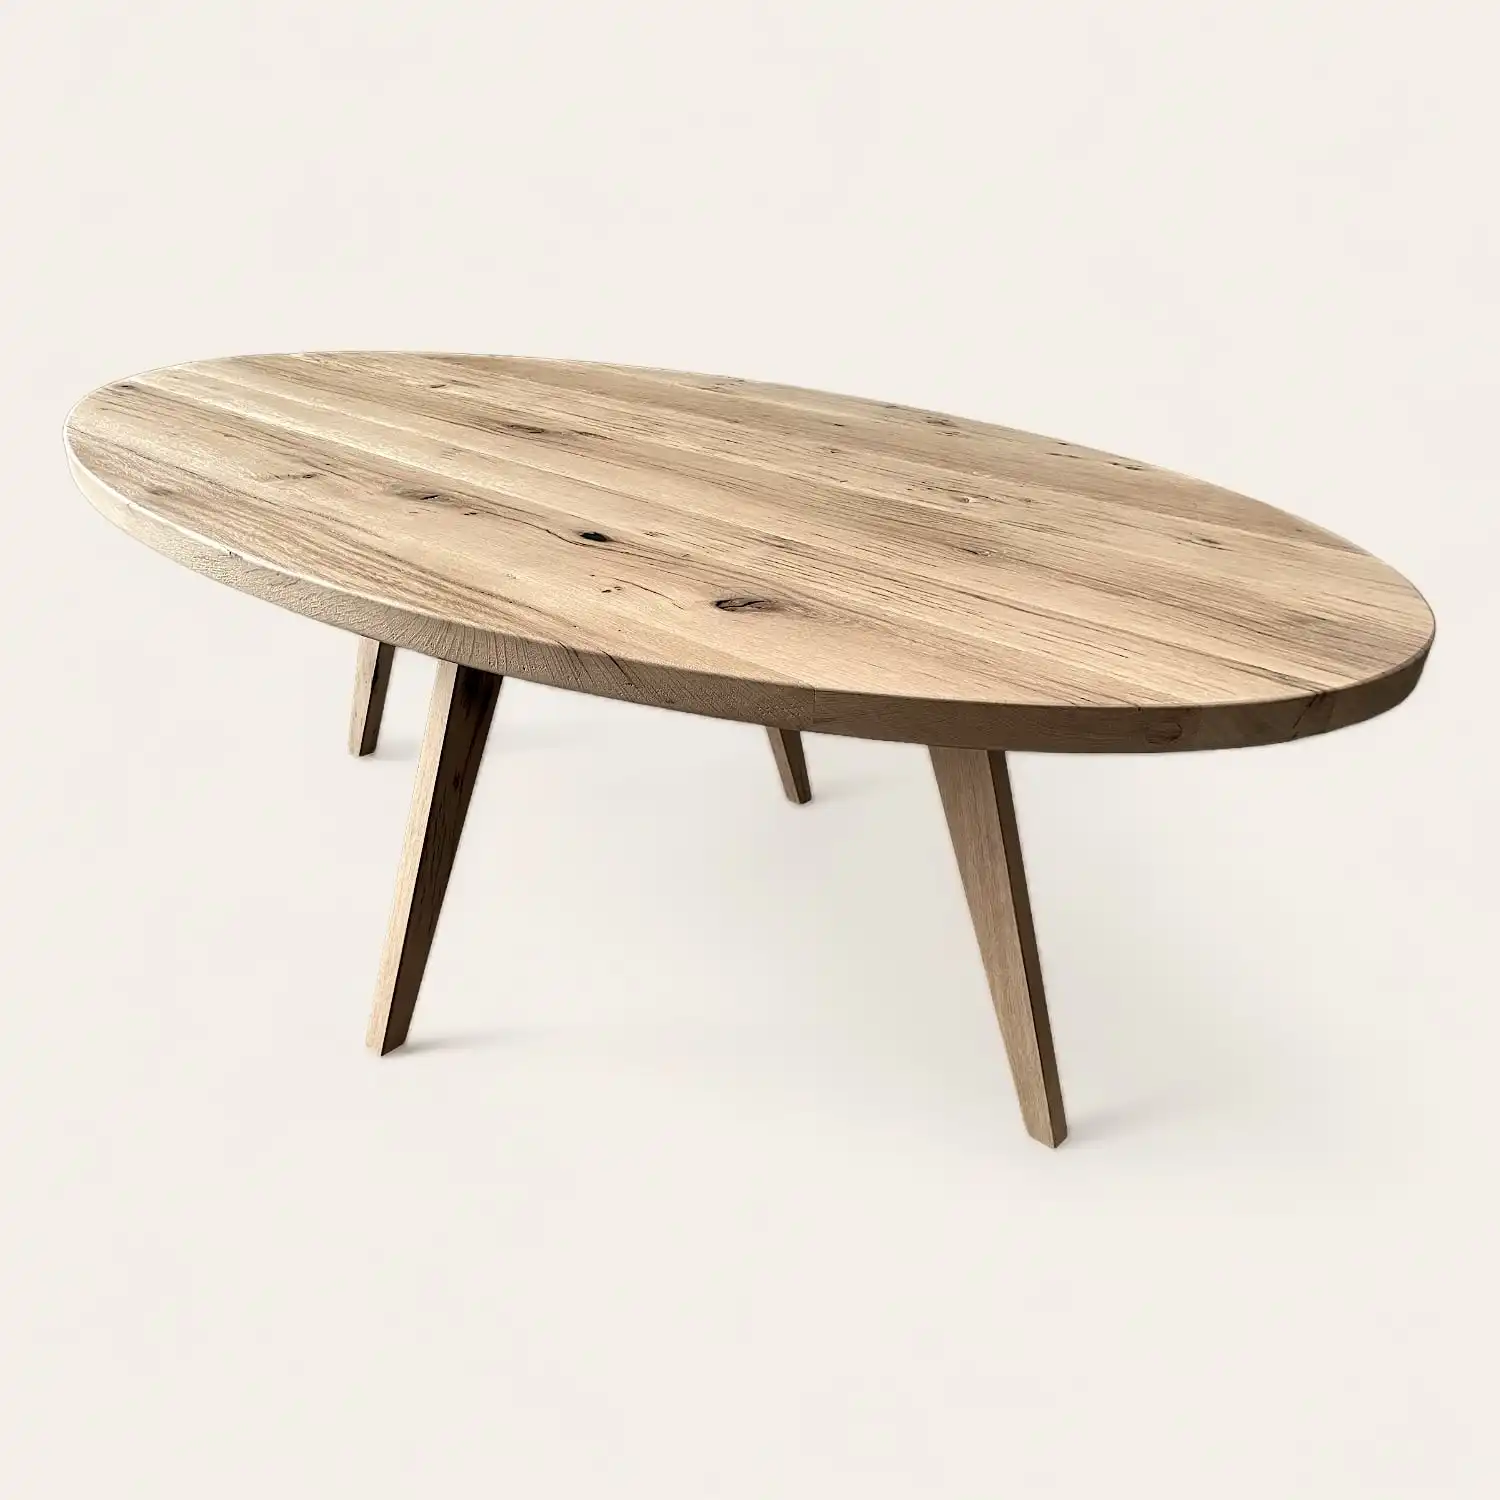  Une table ovale en bois ancien avec deux pieds sur fond blanc. 